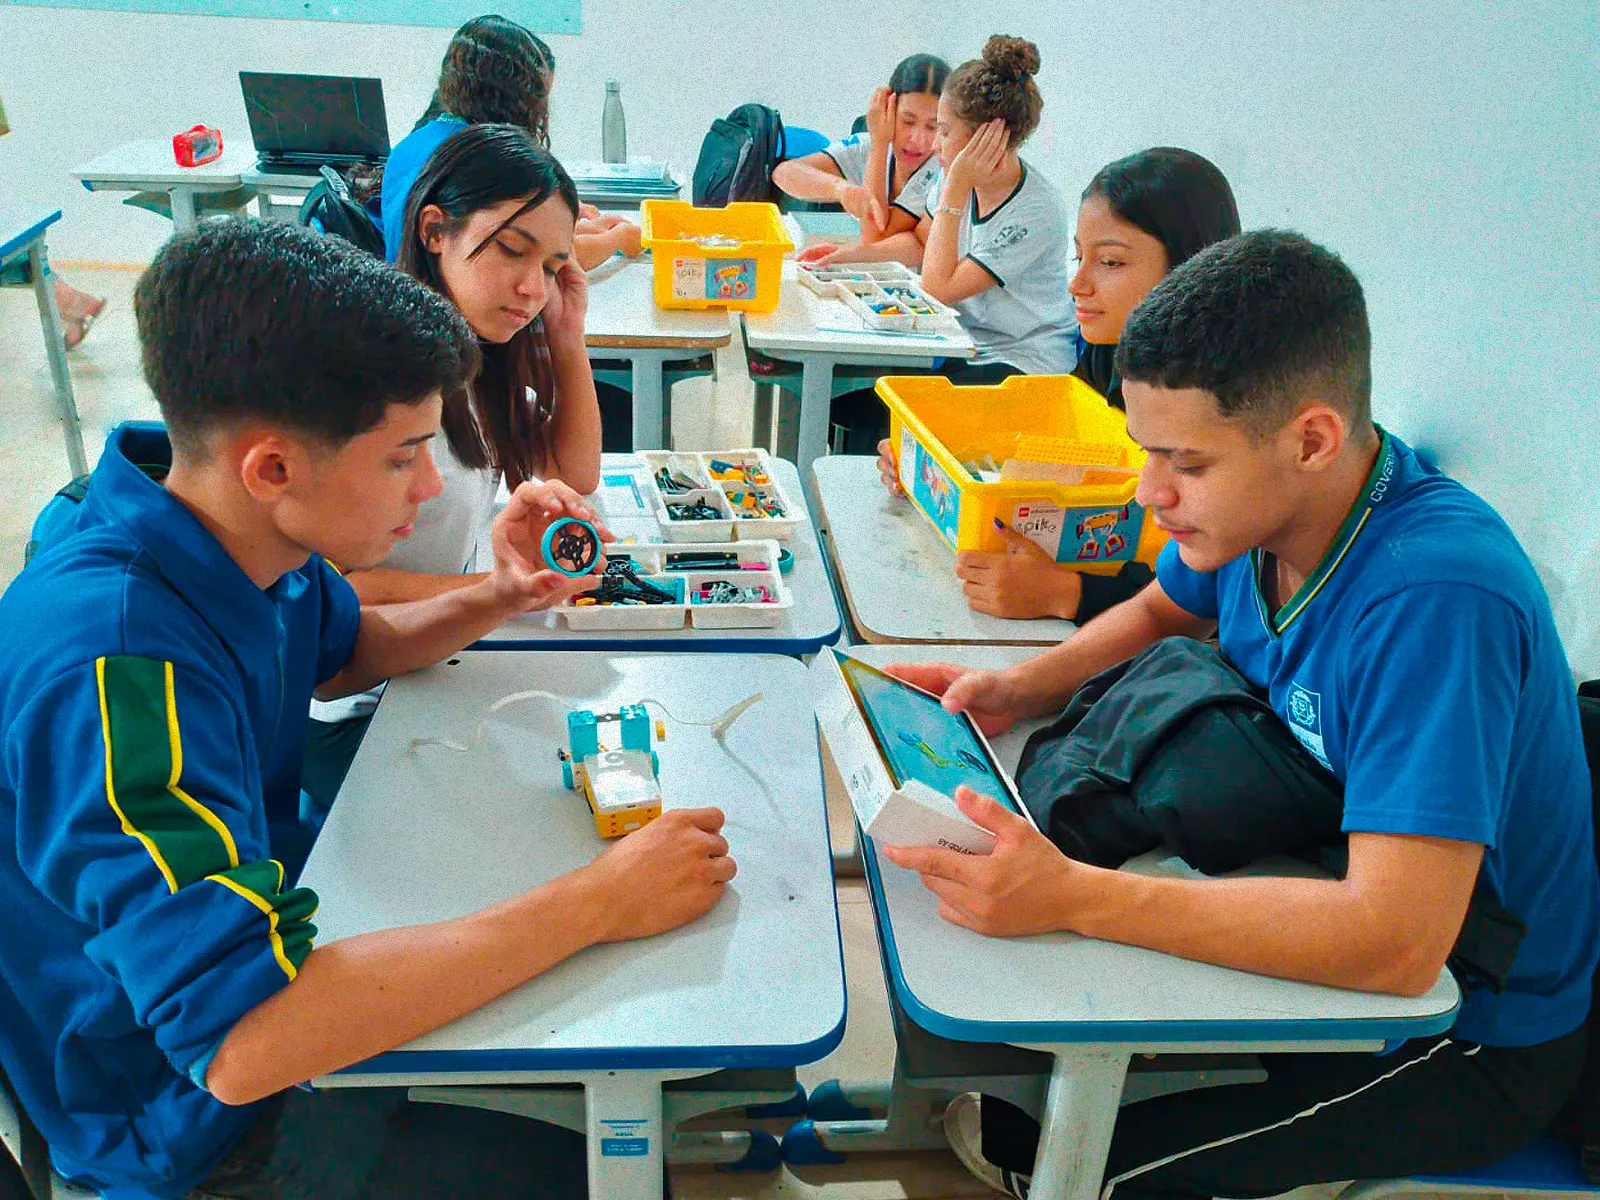 Expansão do programa de robótica beneficia escolas rurais em Mato Grosso